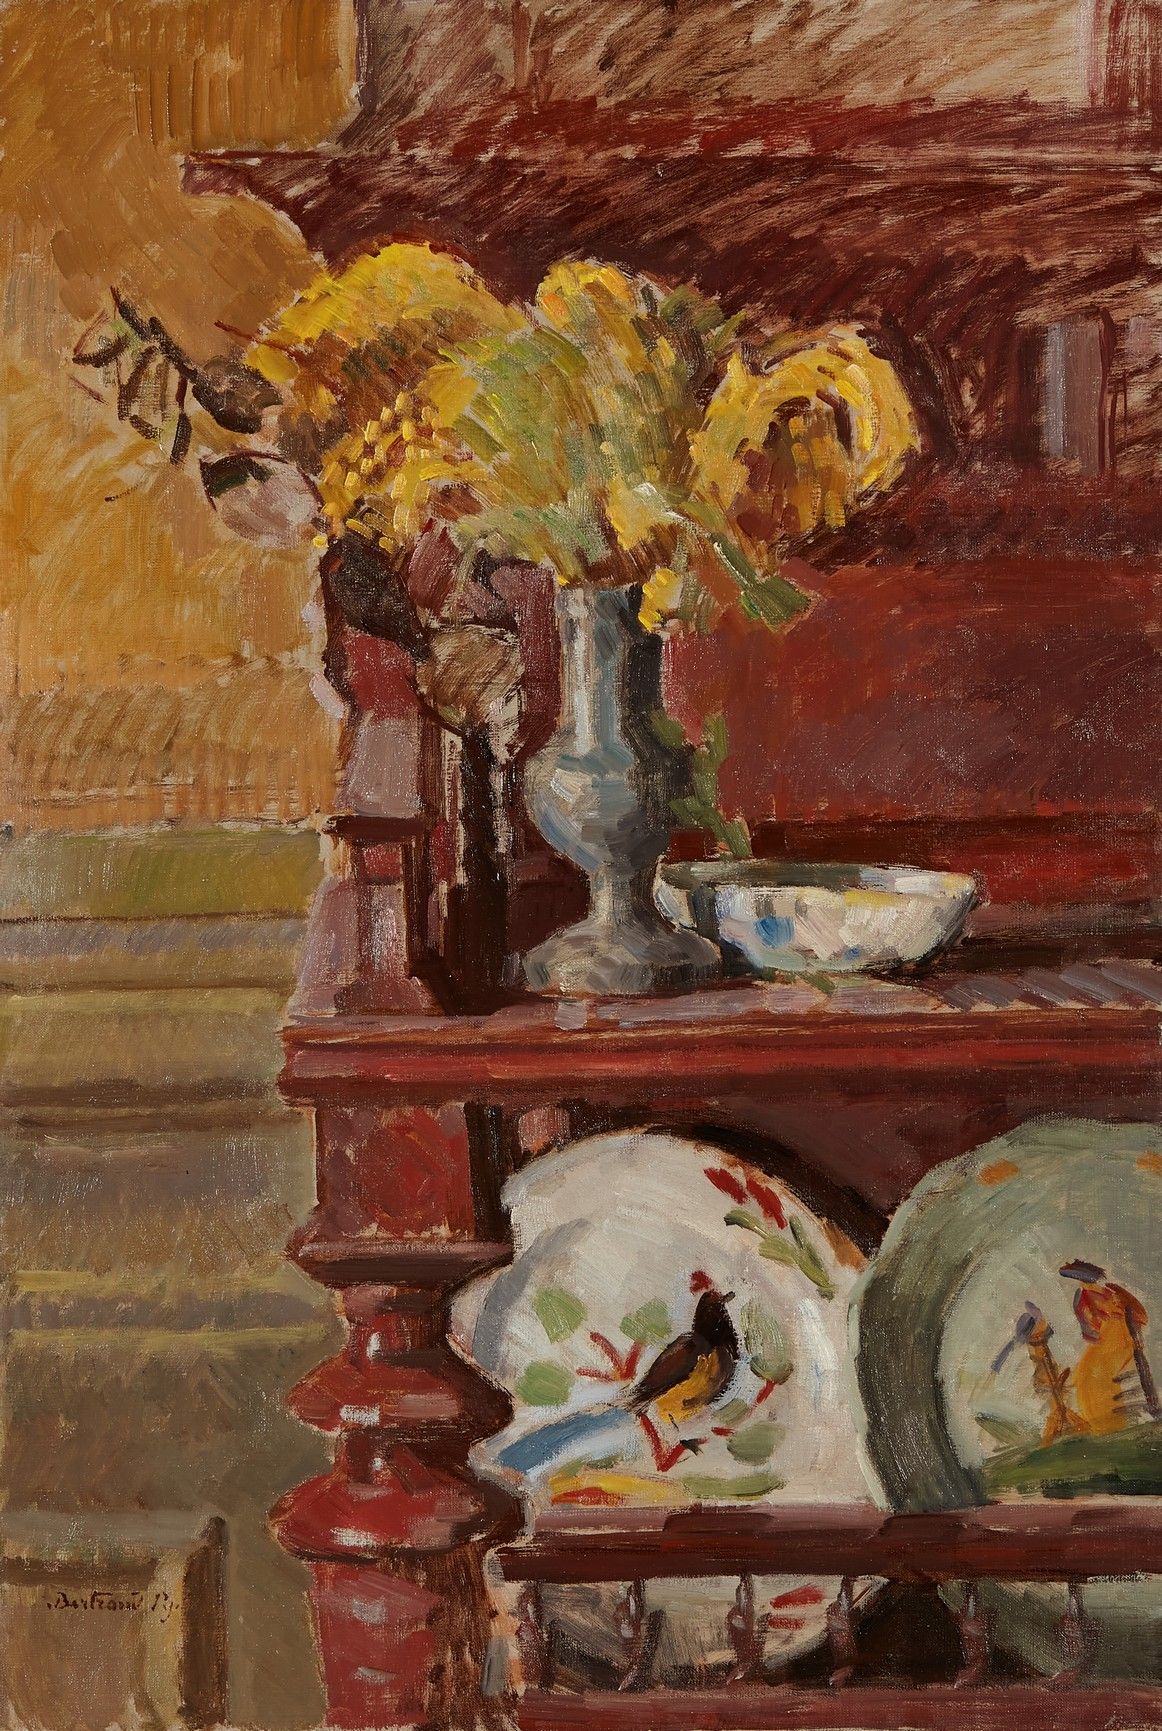 Bertrand py 伯特兰-PY（1895-1973年）

花束和陶器

布面油画，左下角有签名

73 x 50厘米